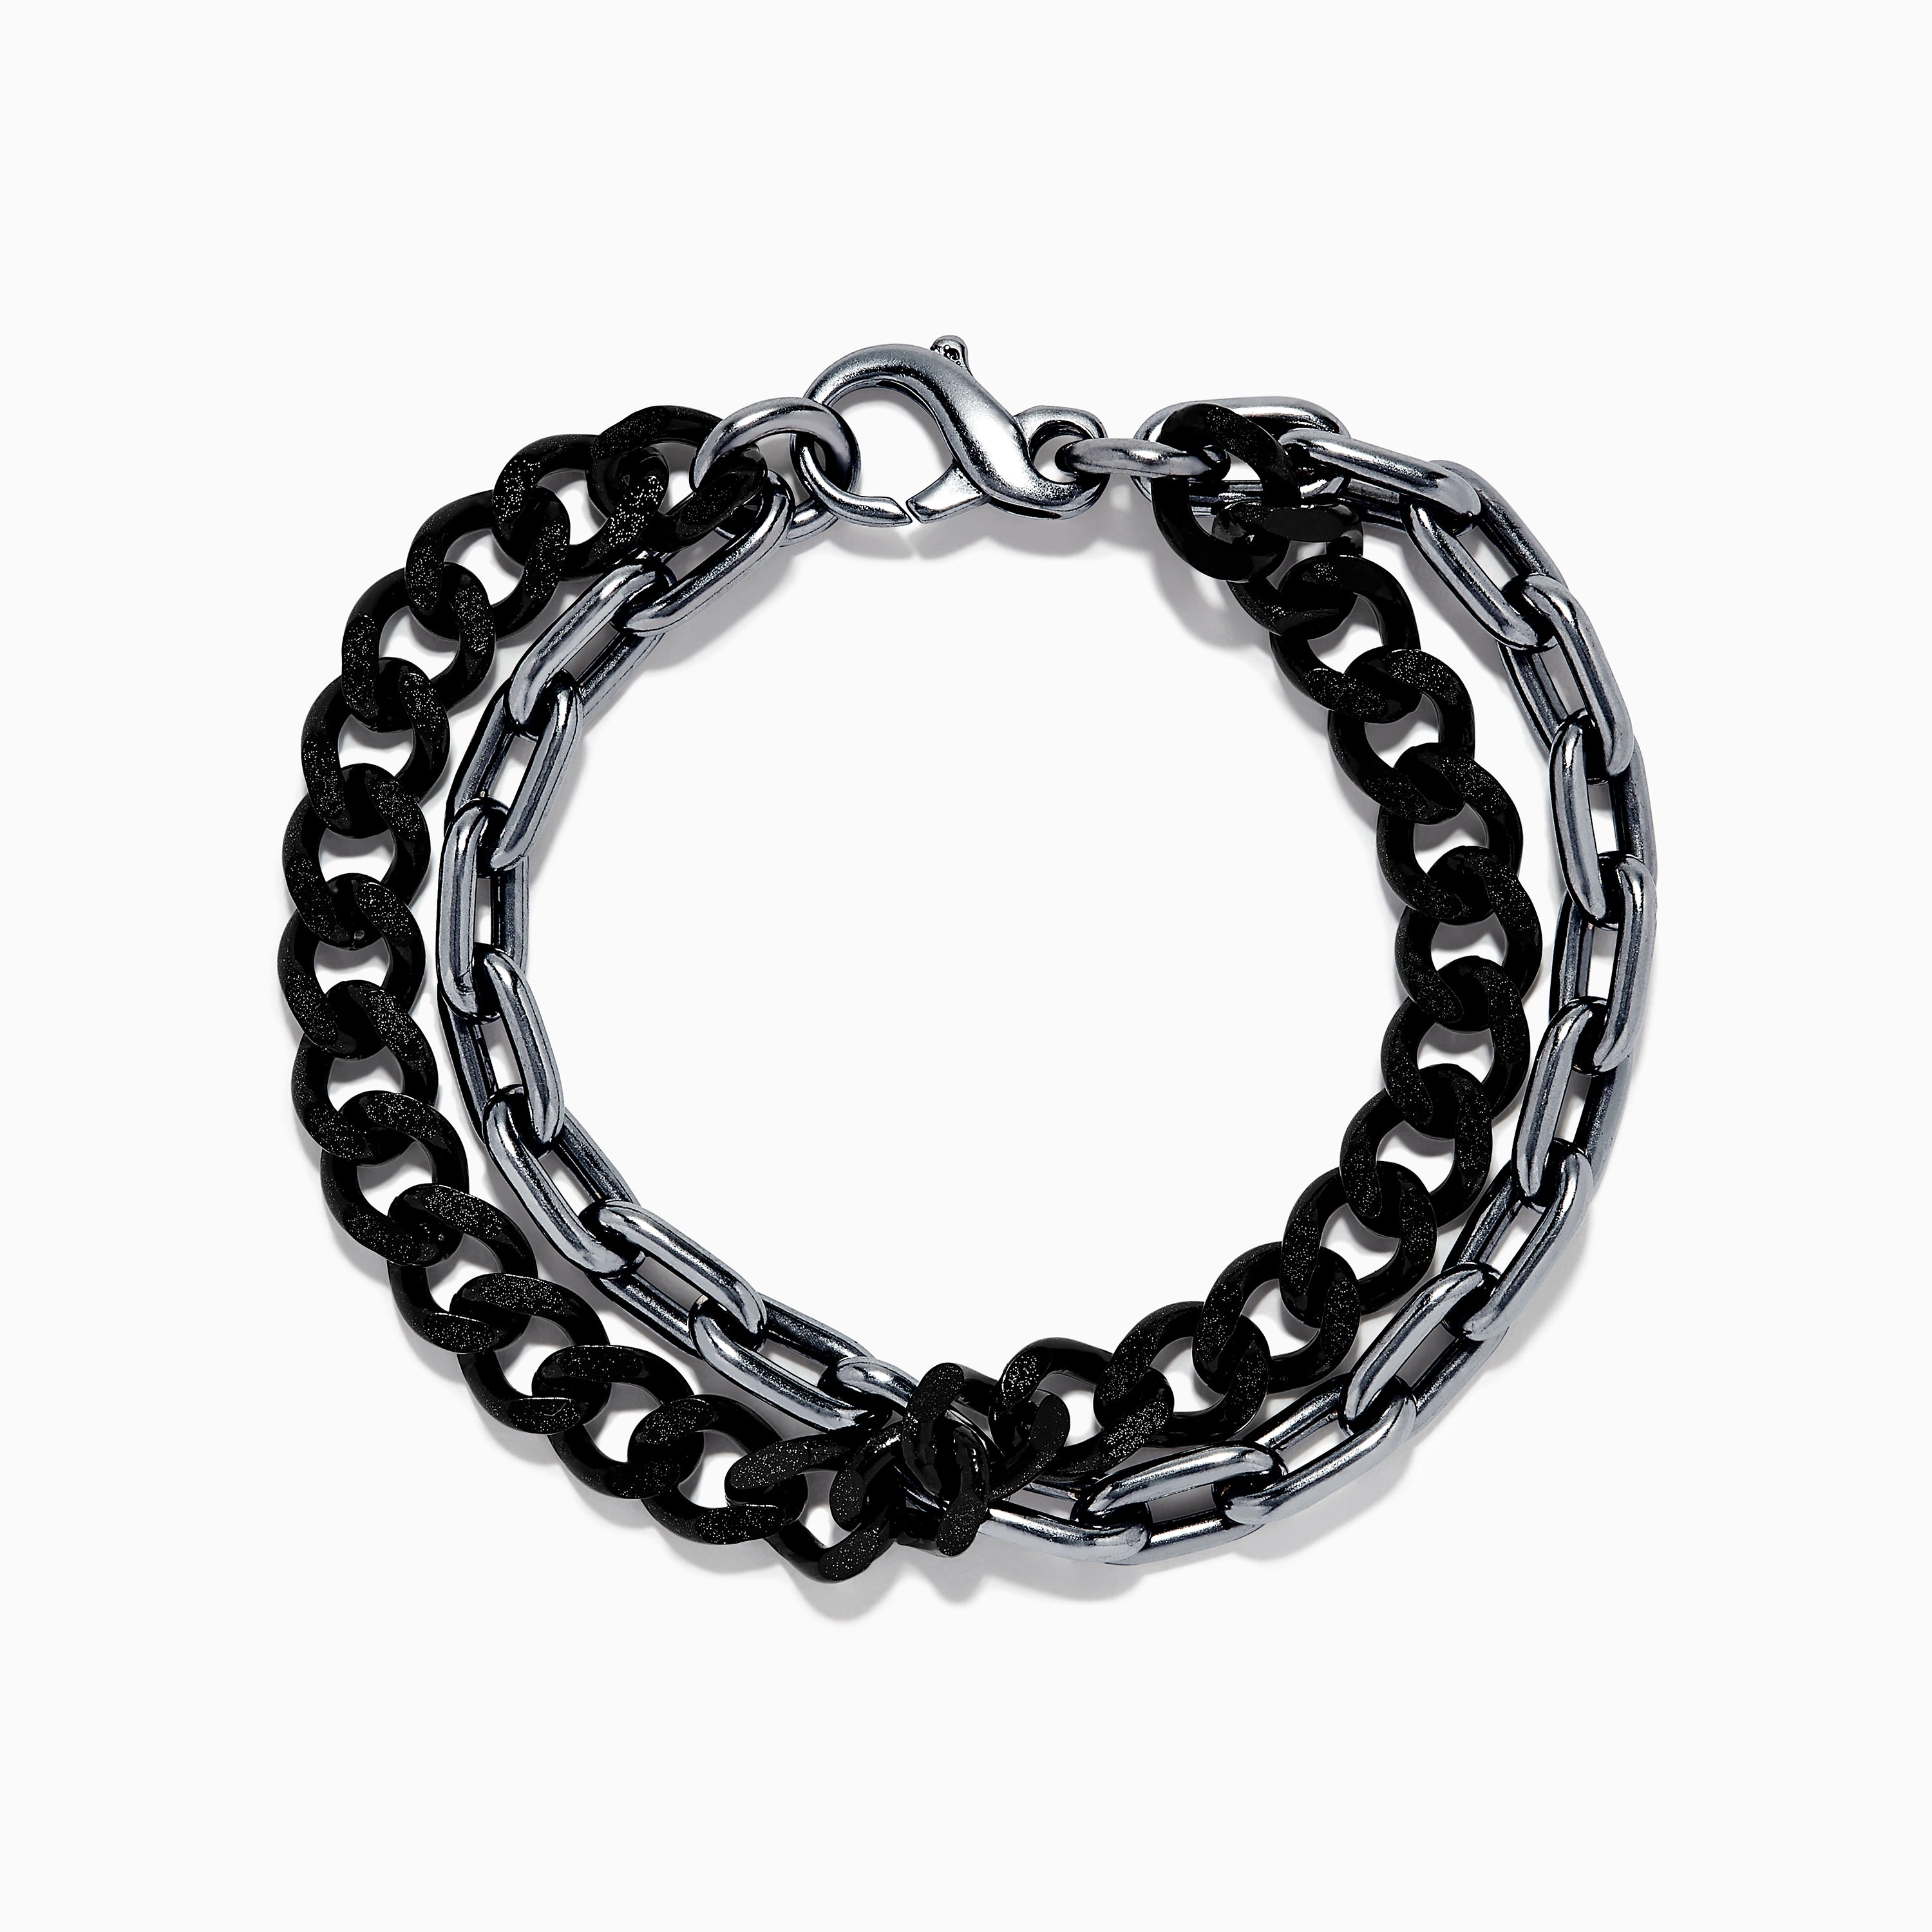 Effy Men's 925 Sterling Silver Double Chain Bracelet